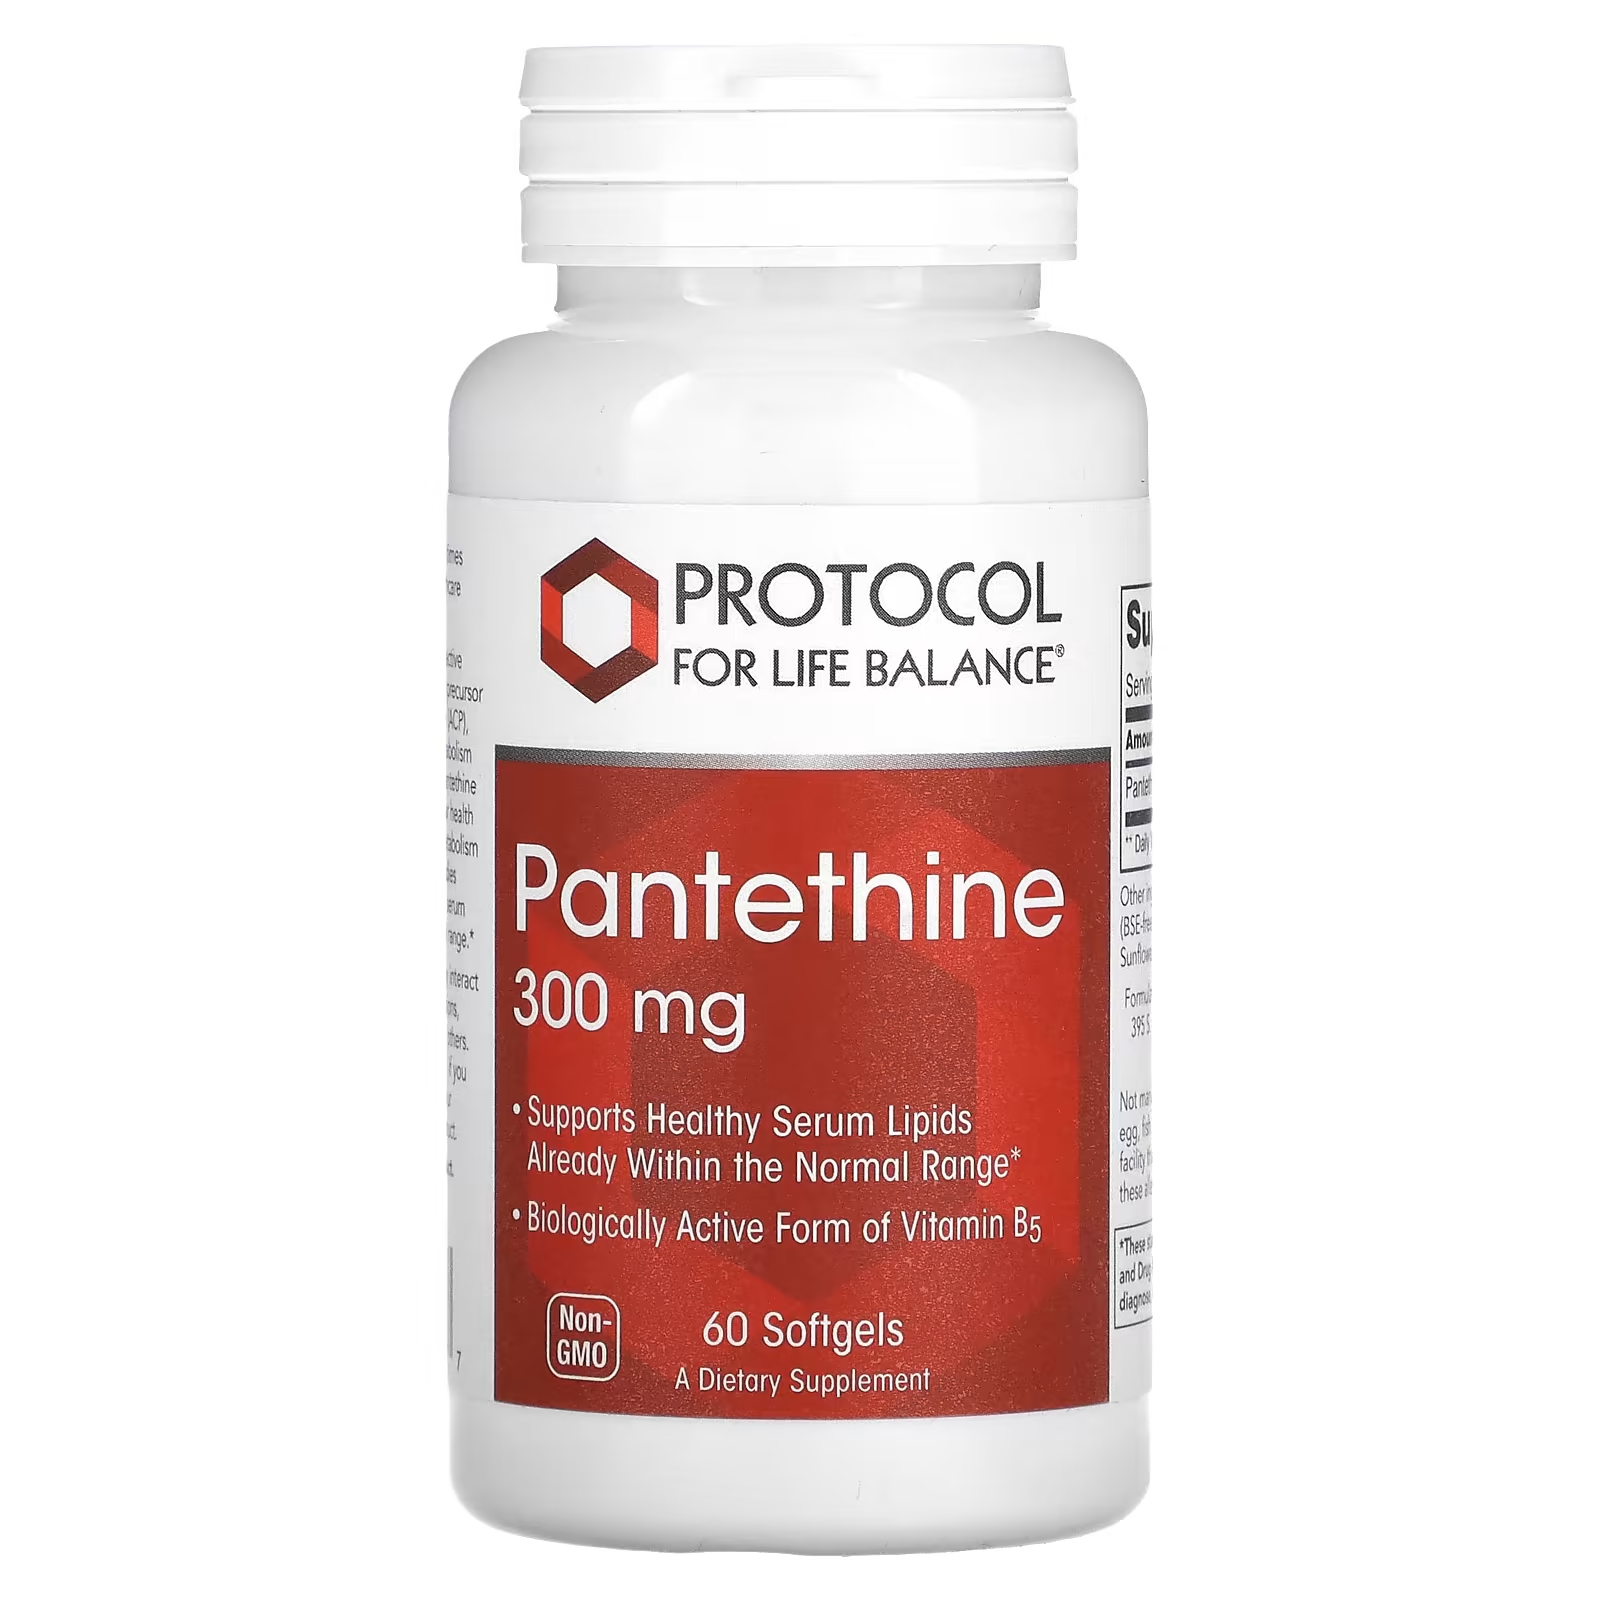 Пантетин 300 мг 60 мягких таблеток Protocol for Life Balance protocol for life balance масло криля двойного действия 1000 мг 60 мягких таблеток